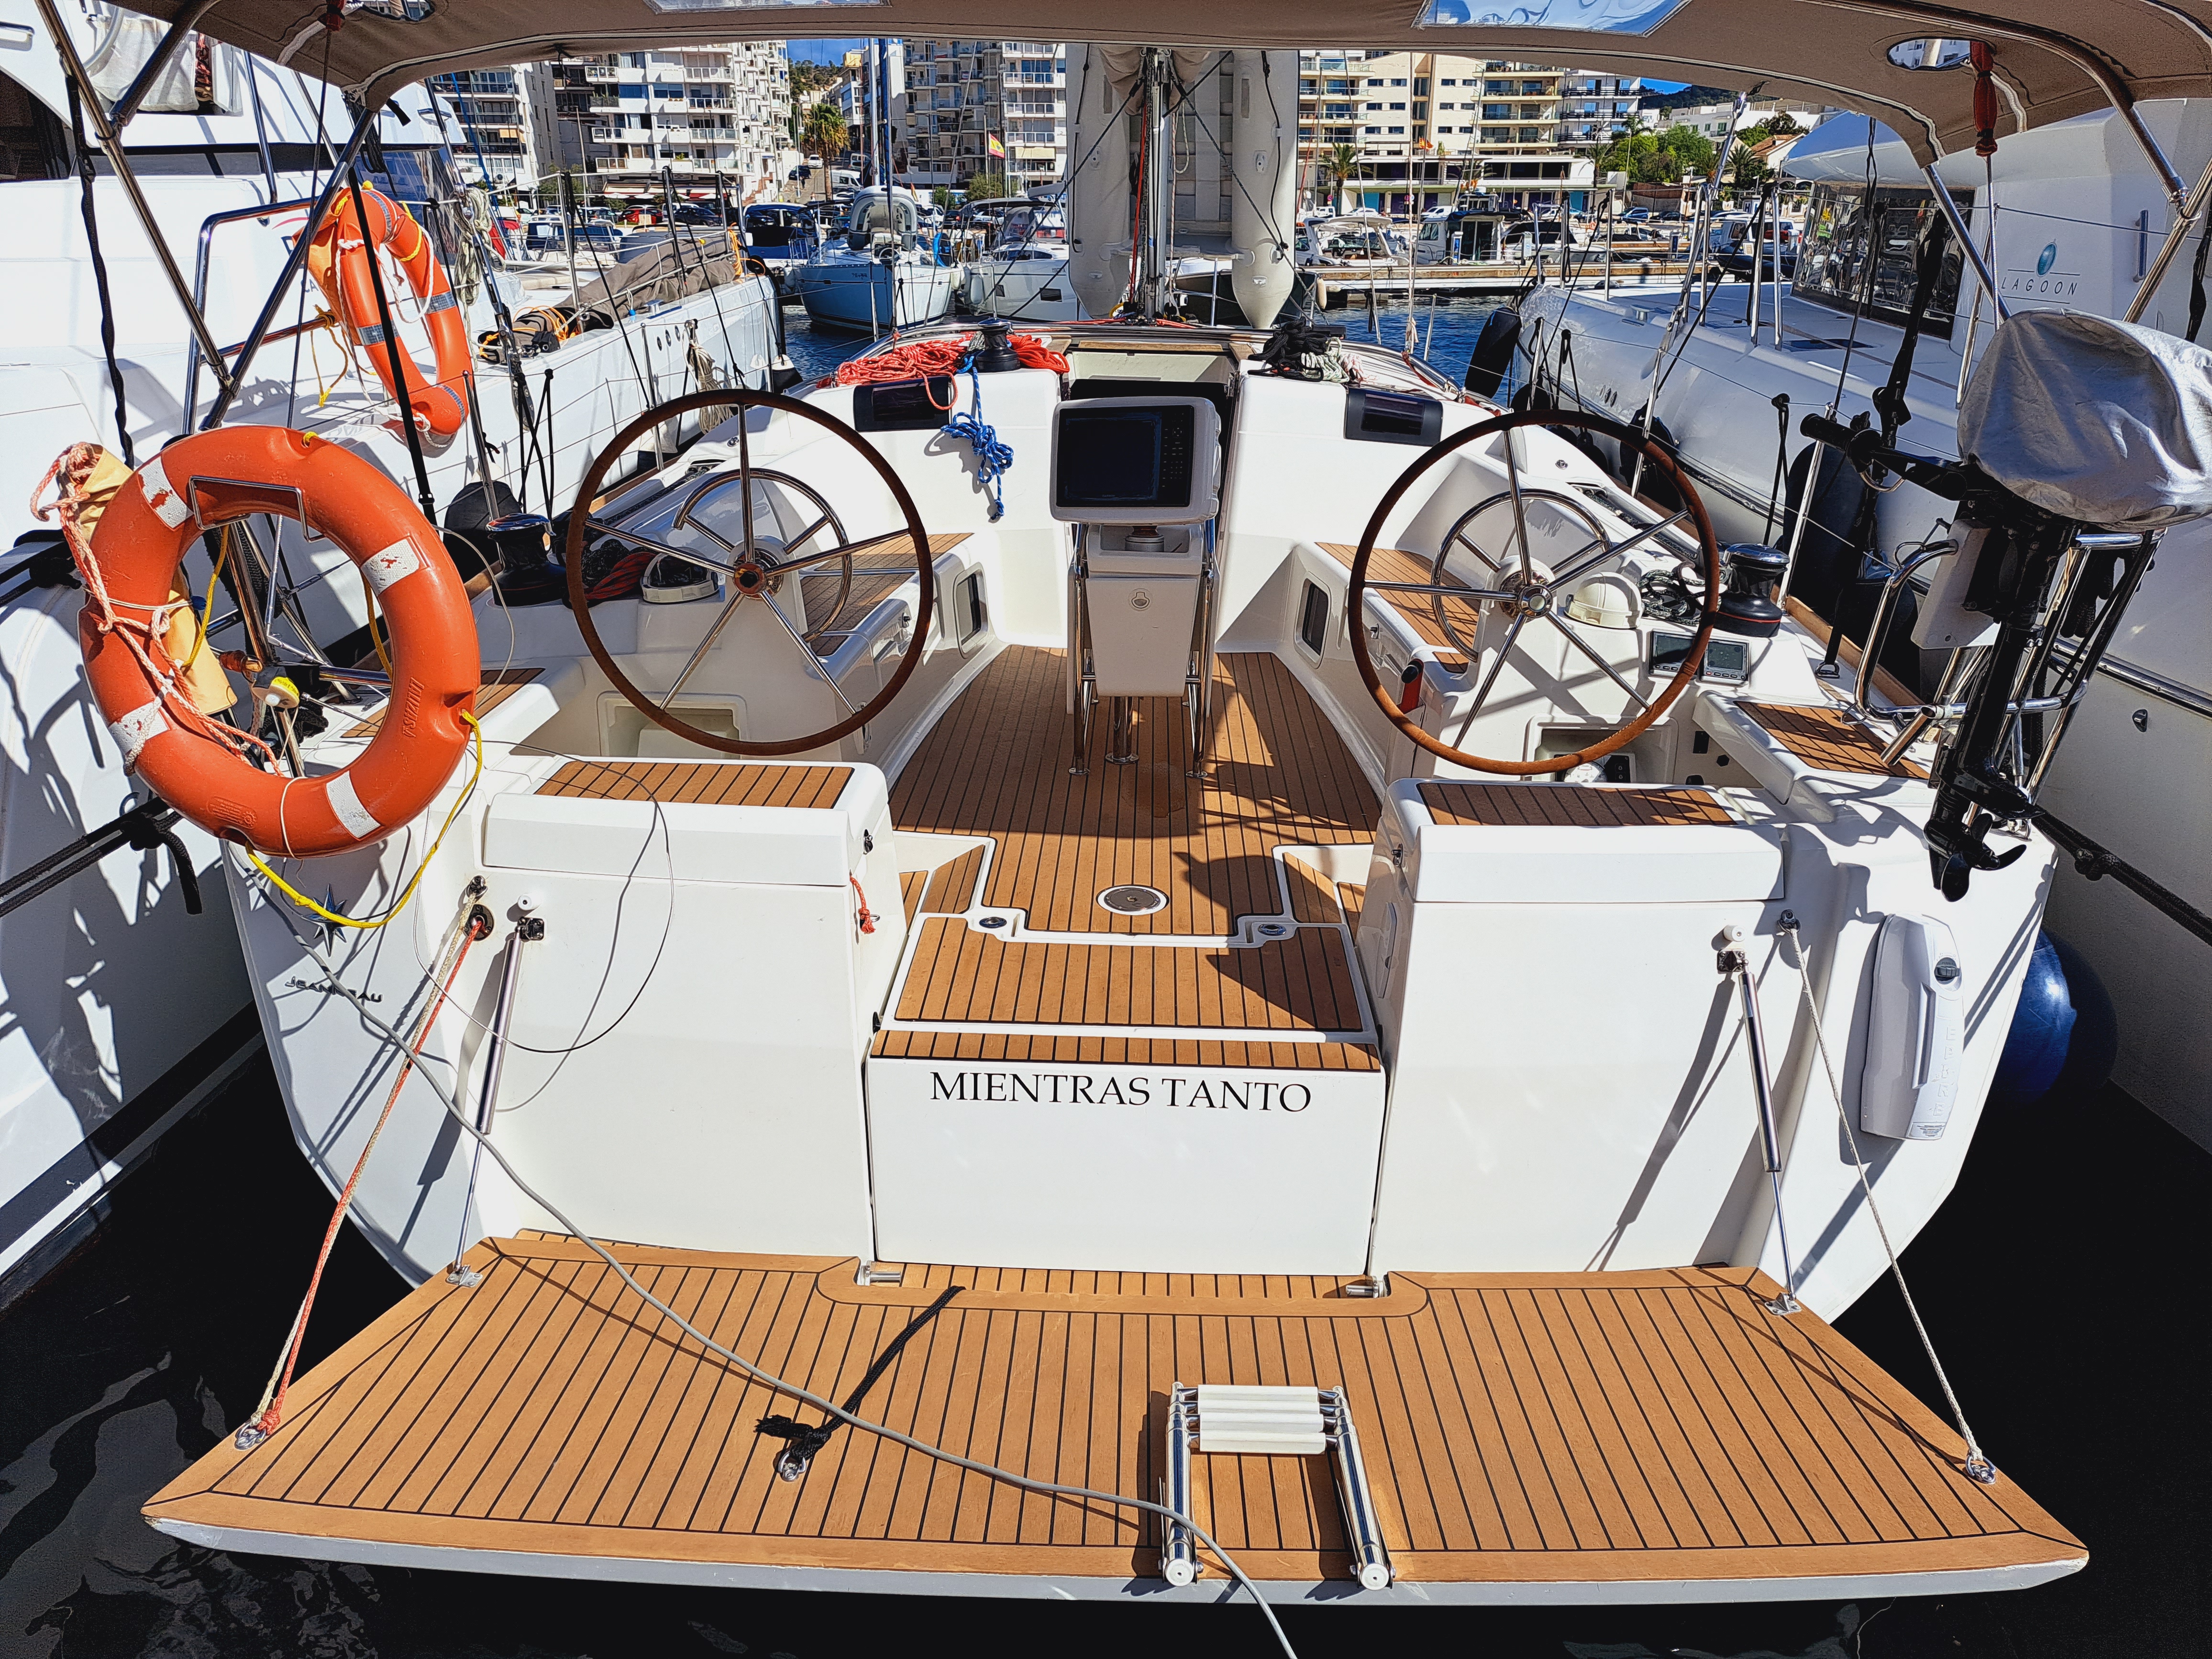 Sun Odyssey 449 - Yacht Charter Ibiza & Boat hire in Spain Balearic Islands Ibiza and Formentera Ibiza Sant Antoni de Portmany Sant Antoni de Portmany Port 2